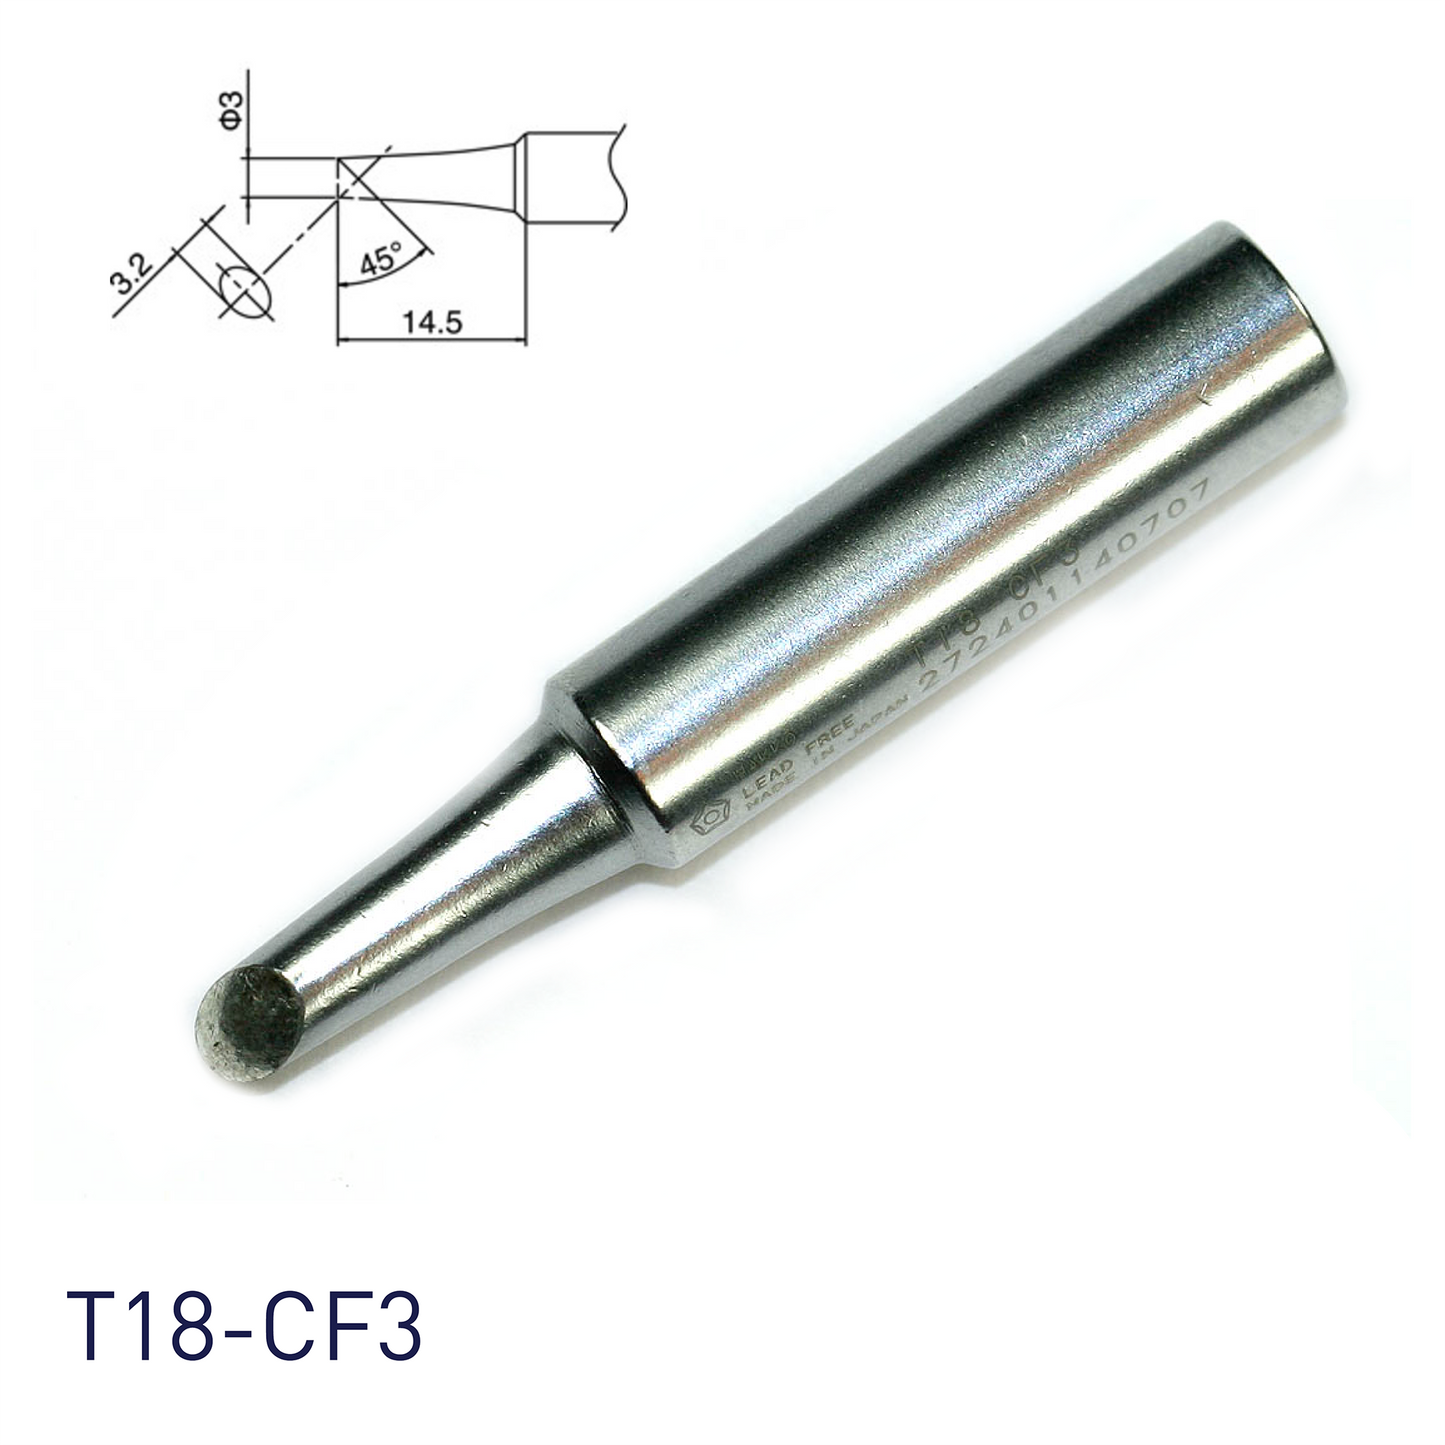 Hakko T18-CF3 for soldering station FX888, FX888D, FX889, FR701, FR702, FX600 & soldering iron FX8801, FX600